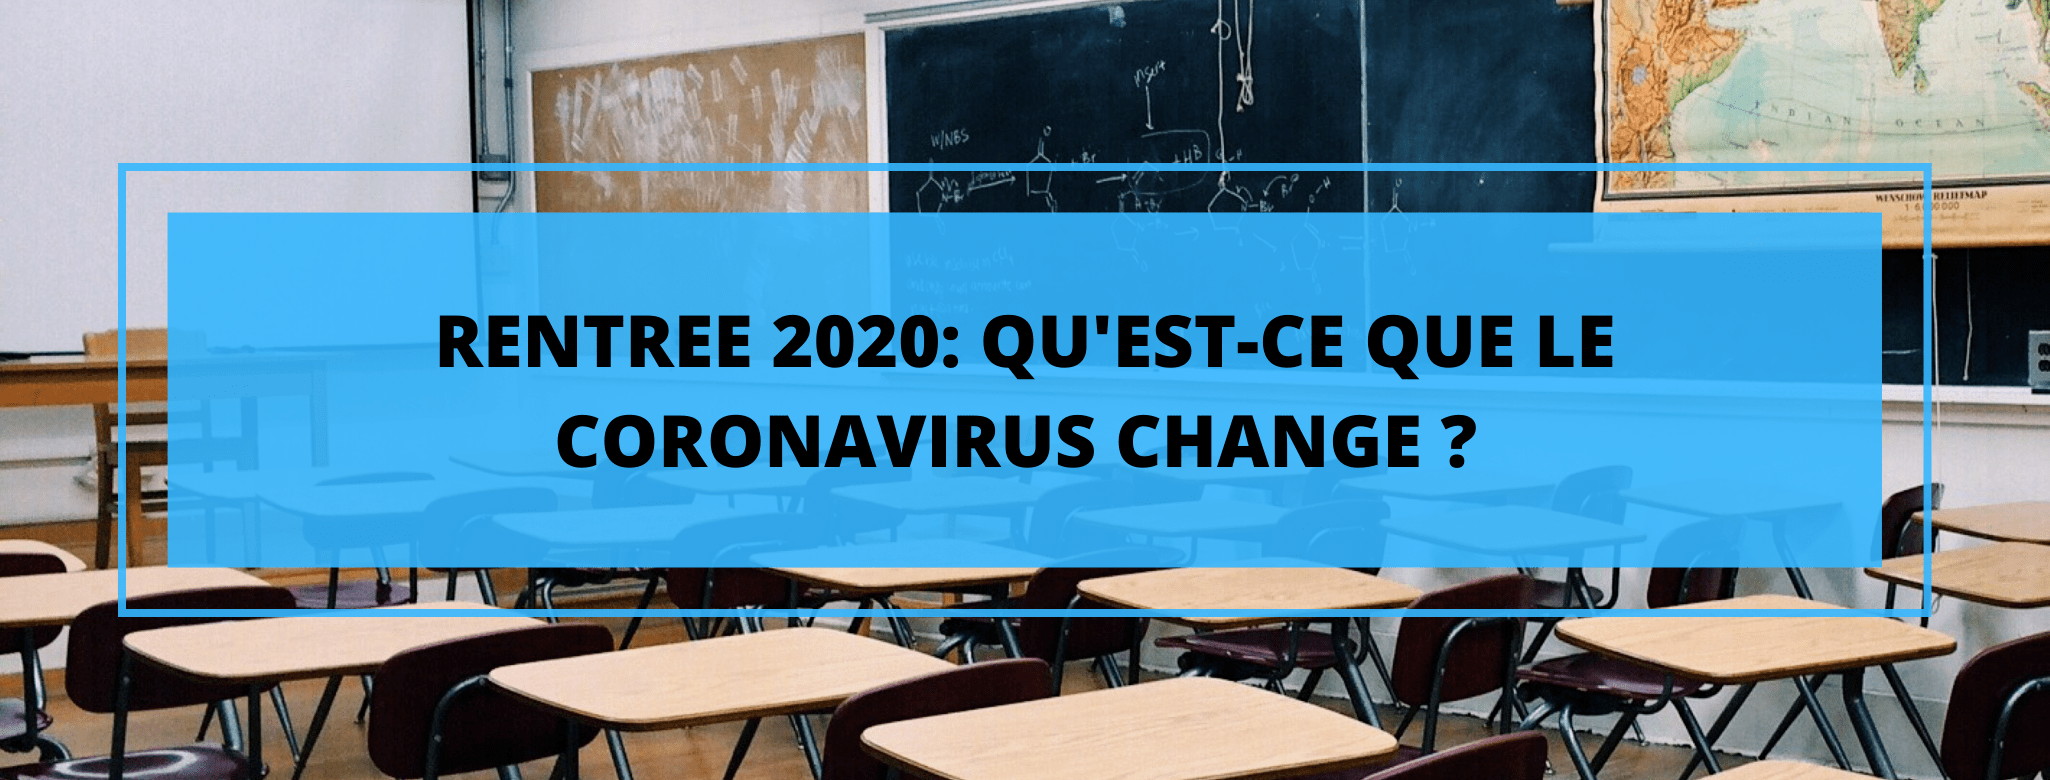 Coronavirus et rentrée 2020: Quels sont les changements ?